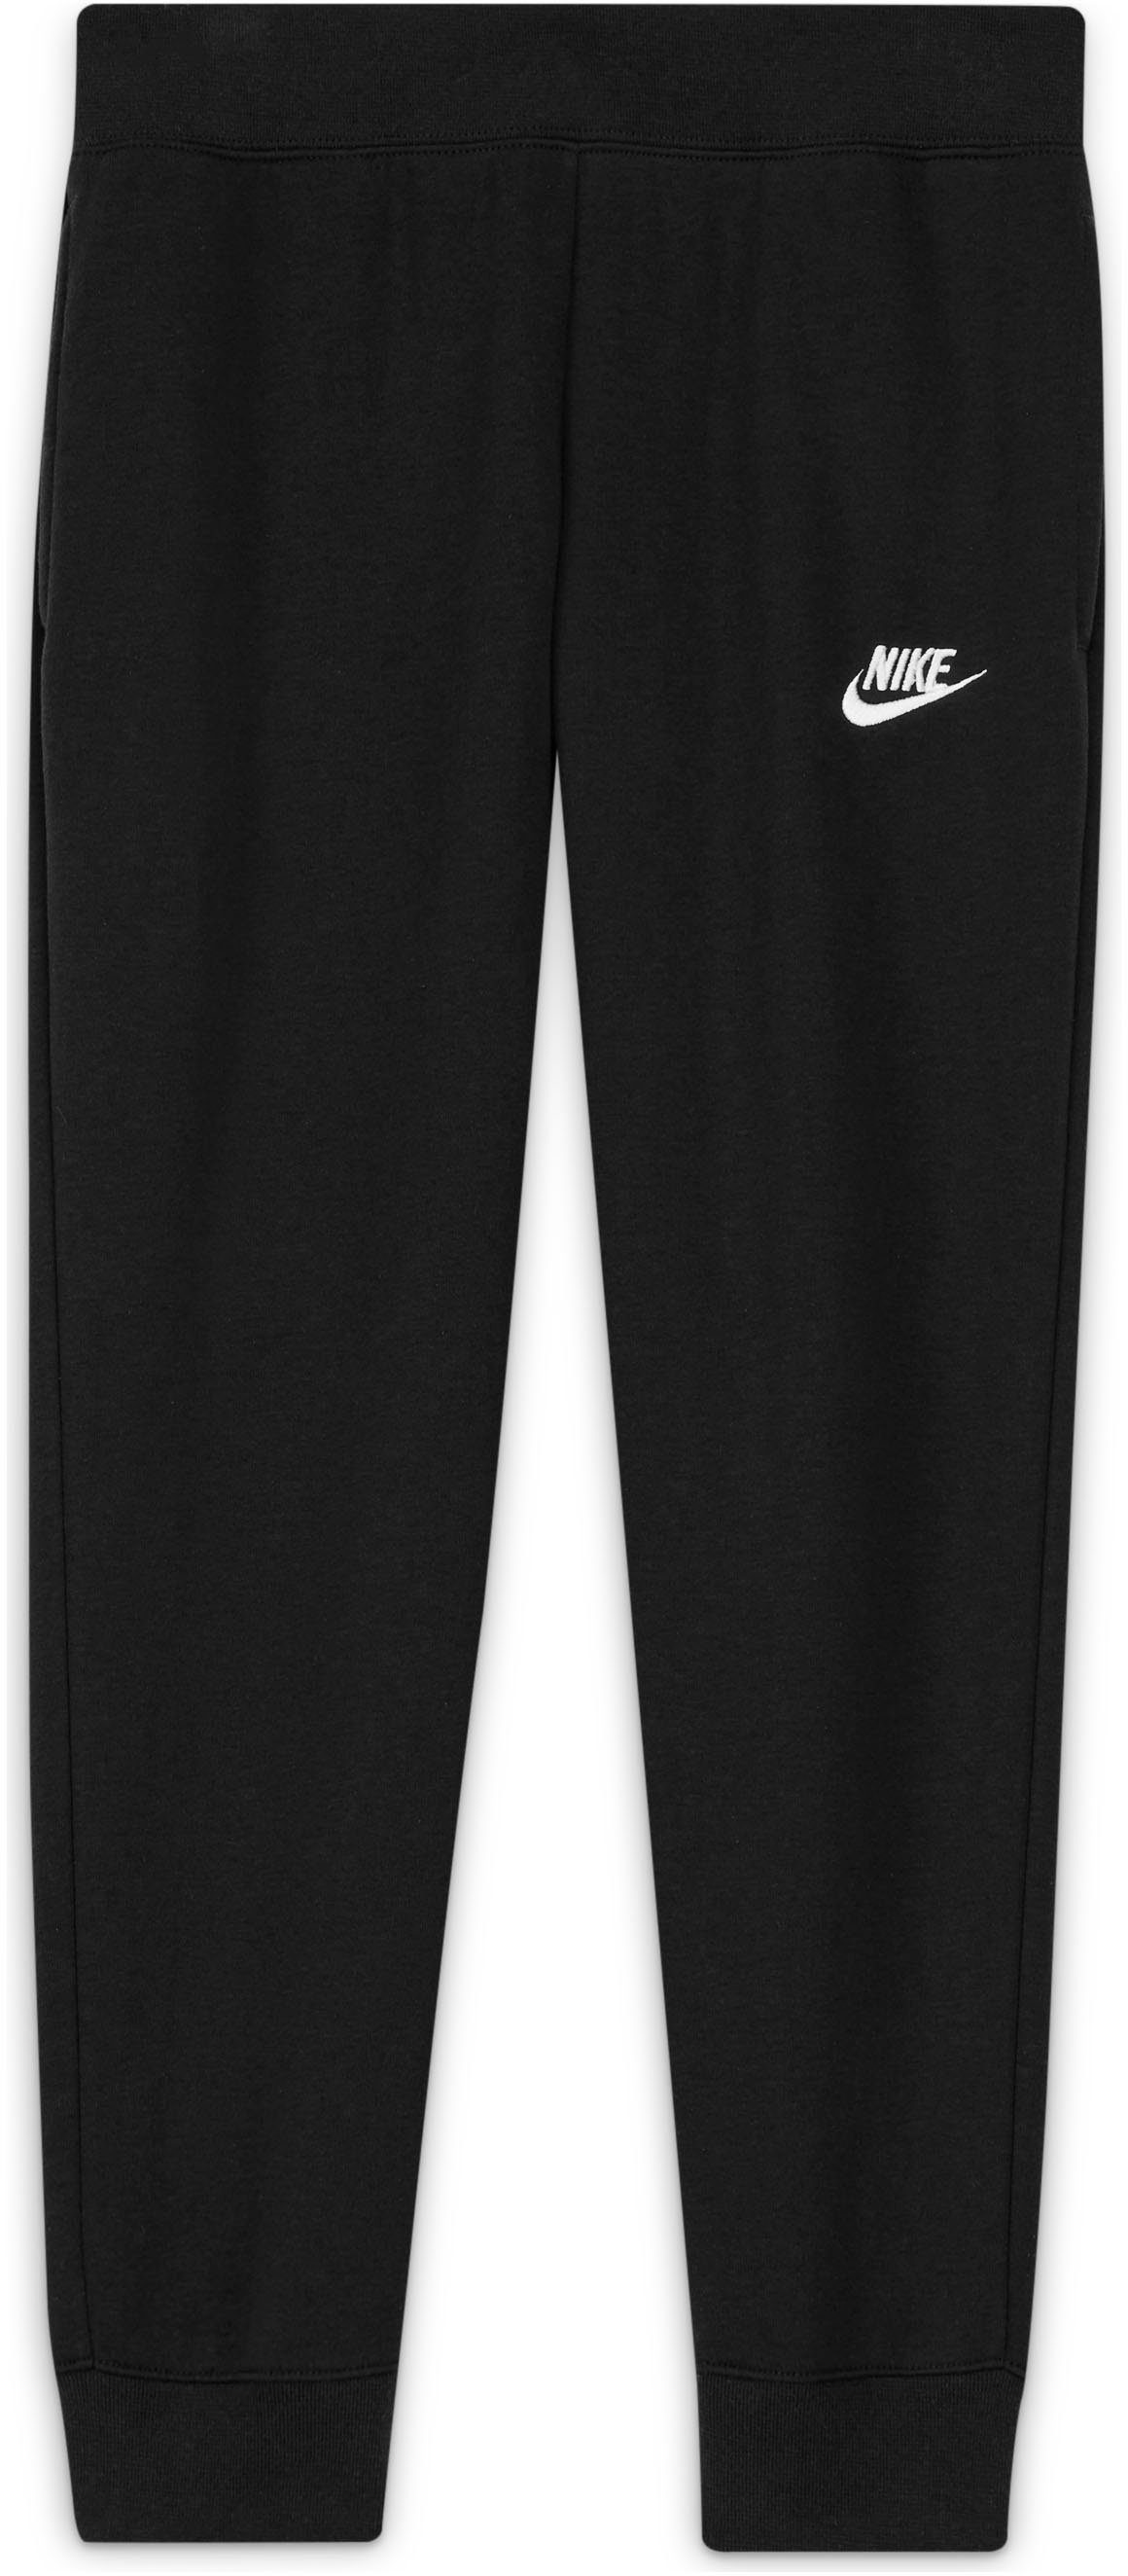 Club Fleece Big Pants schwarz Kids' Nike (Girls) Jogginghose Sportswear